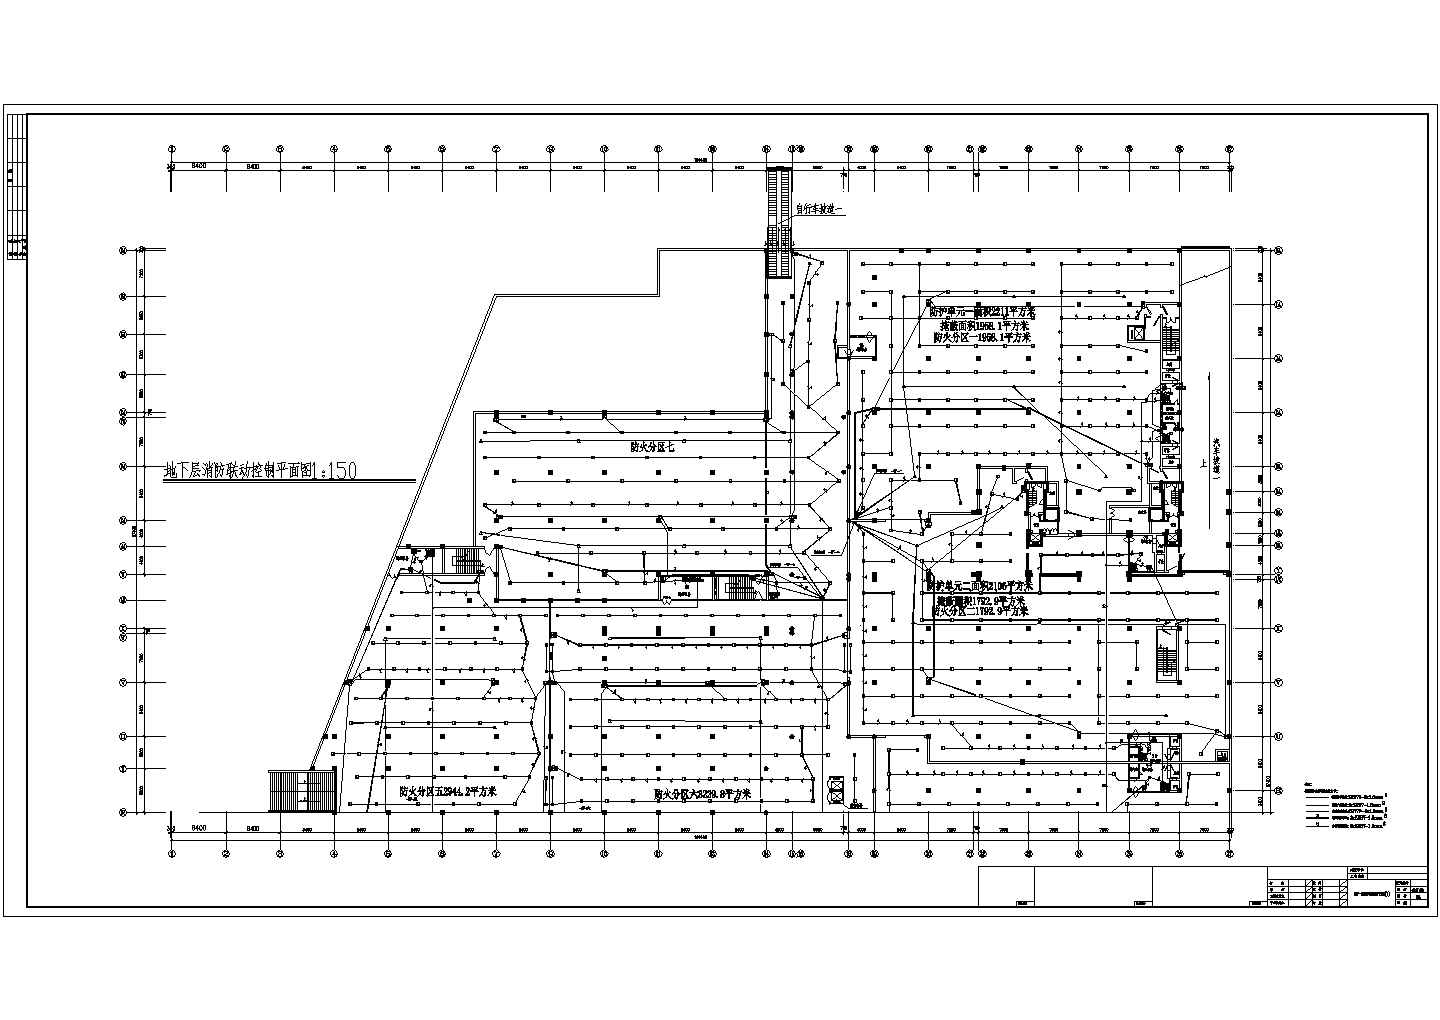 滨州商城地下室消防系统CAD电气设计完整图